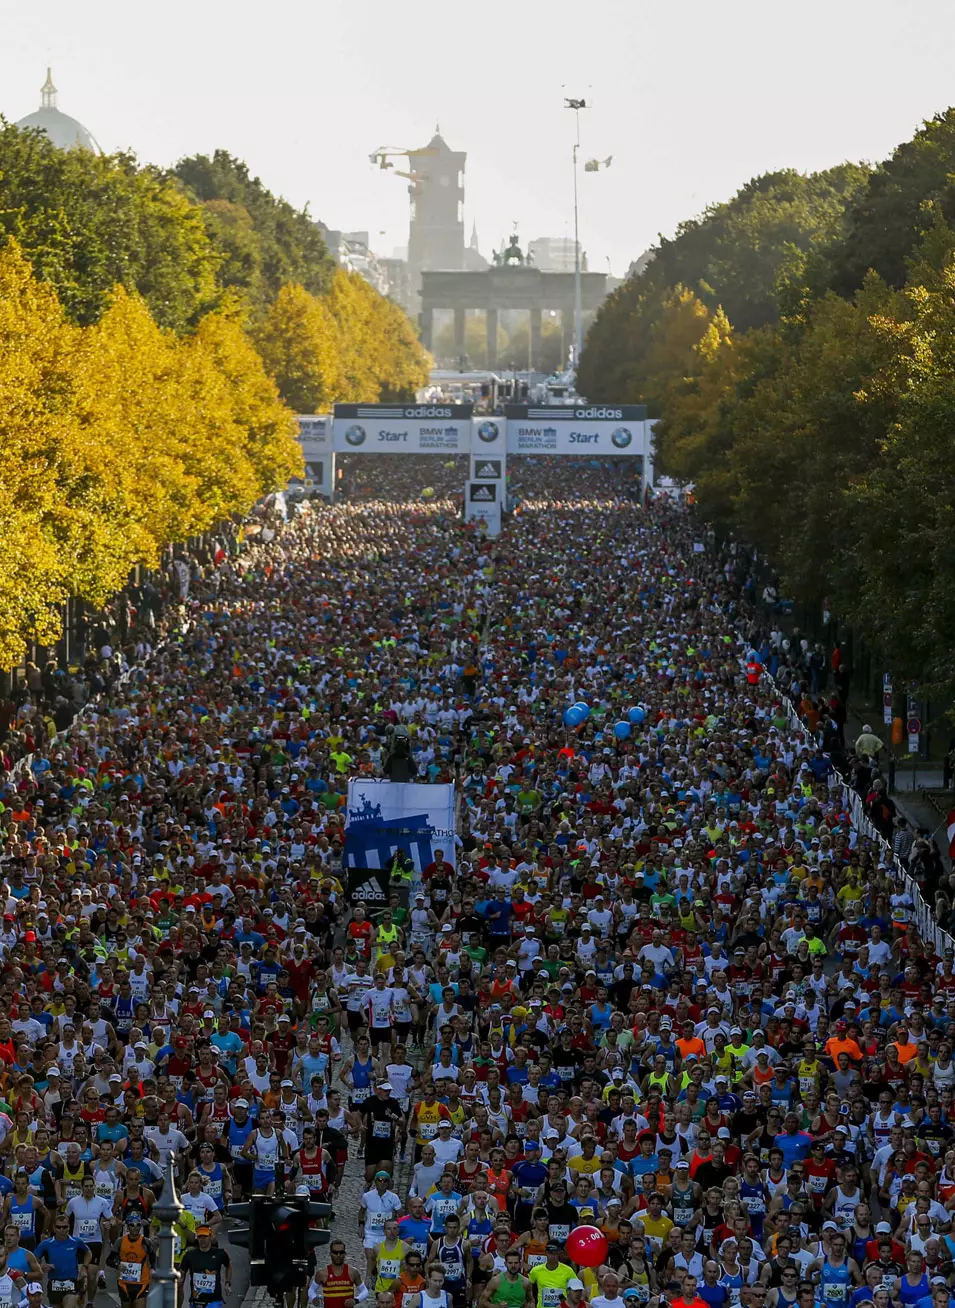 המירוץ הגדול בעולם. מרתון ברלין 2012 יוצא לדרך